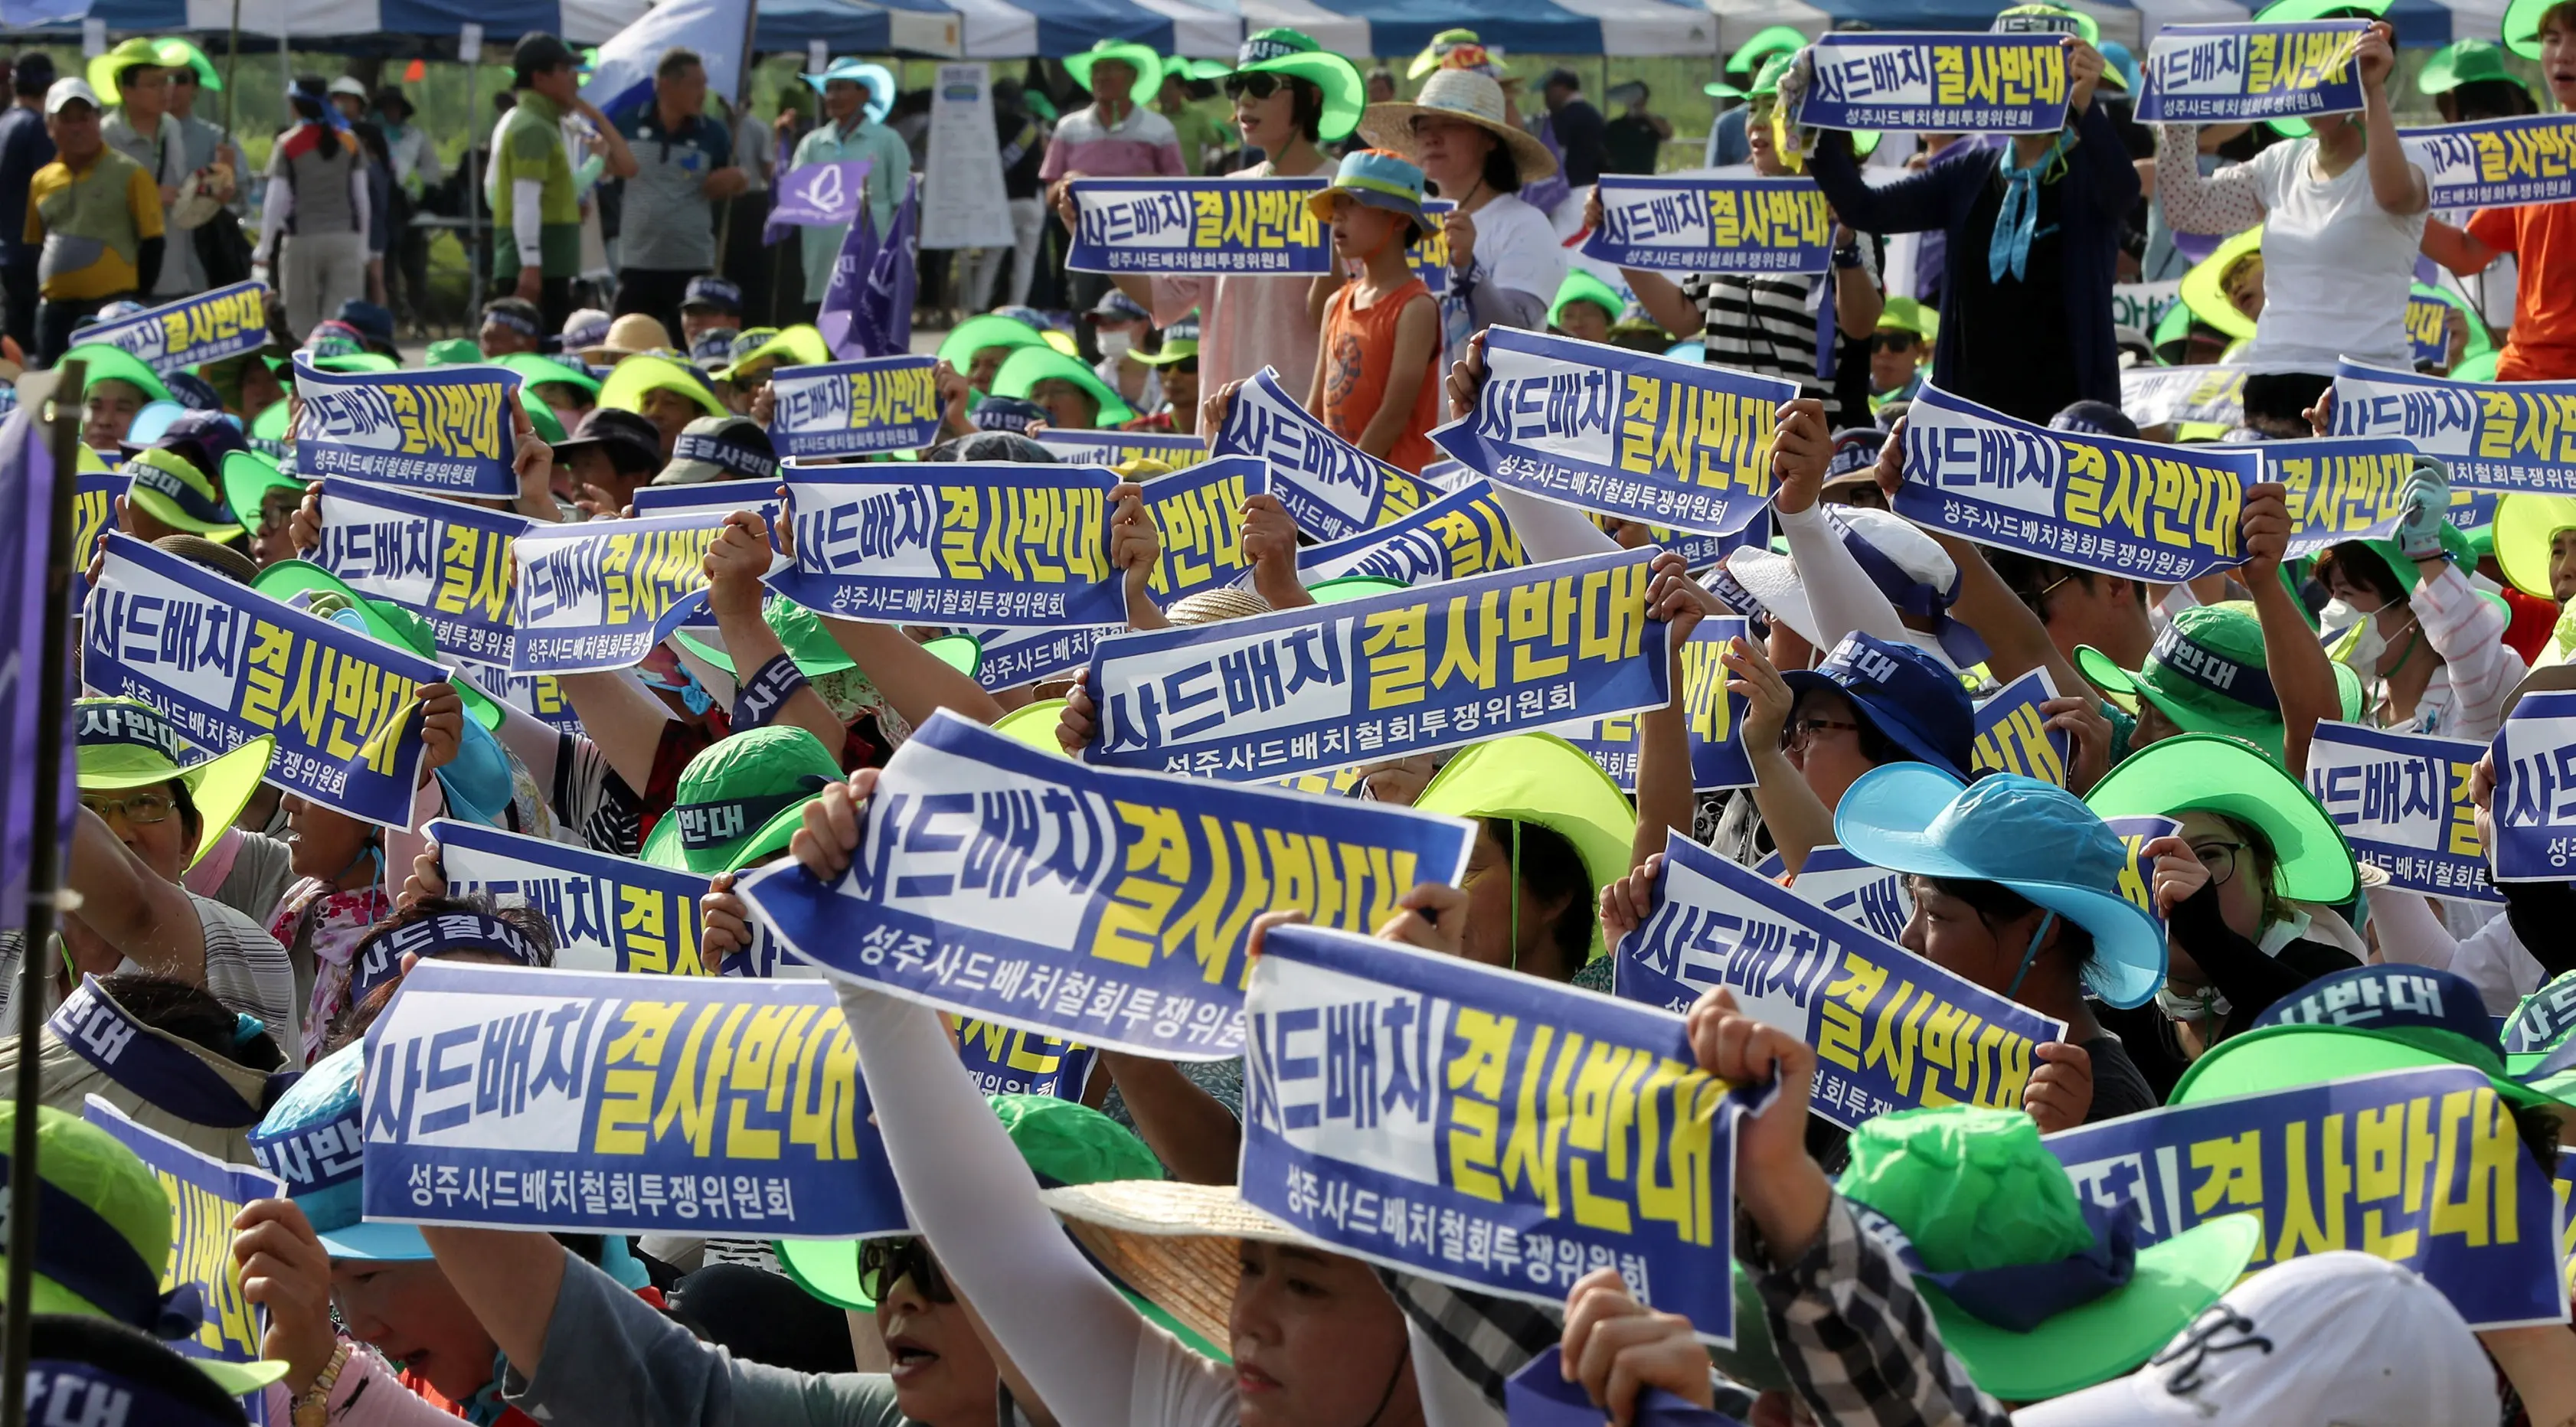 Warga membawa selembaran sambil melontarkan protes terhadap keputusan pemerintah yang menempatkan alat pertahanan anti rudal AS Terminal High Altitude Area Defence (THAAD) di Seongju, Korea Selatan, Senin (15/8).( Reuters/Kim Jun- beom)